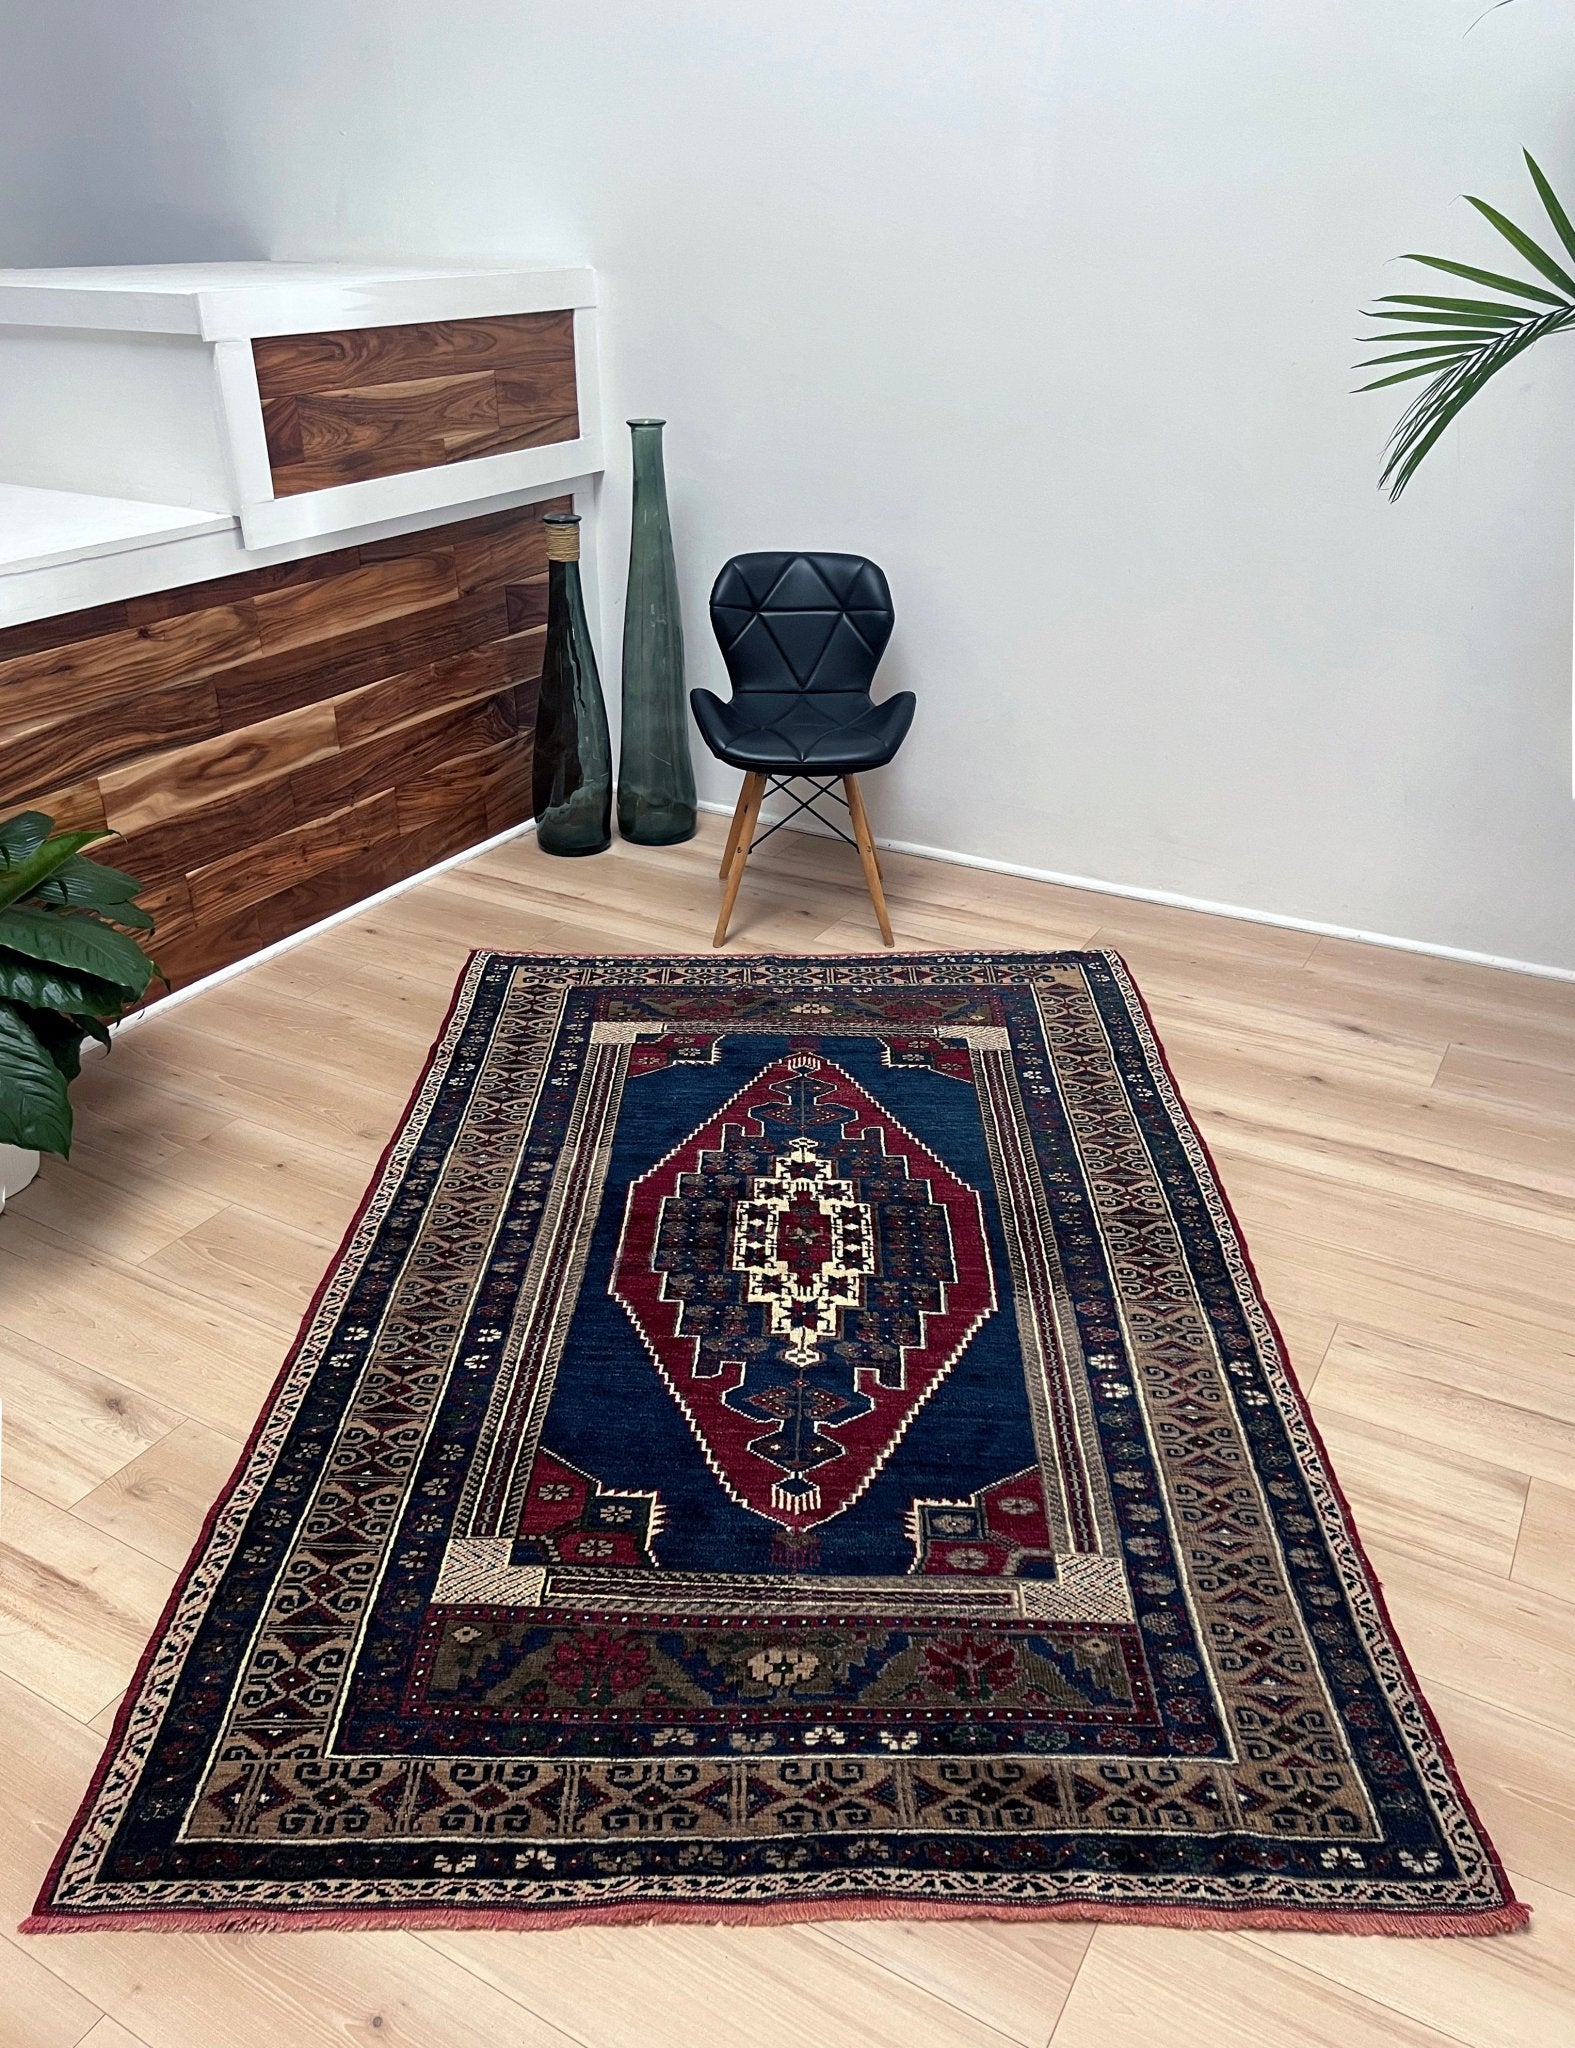 taspinar wool handmade turkish rug san francisco bay area. Oriental rug shop. Buy 4x6 wool handmade rug online free shipping